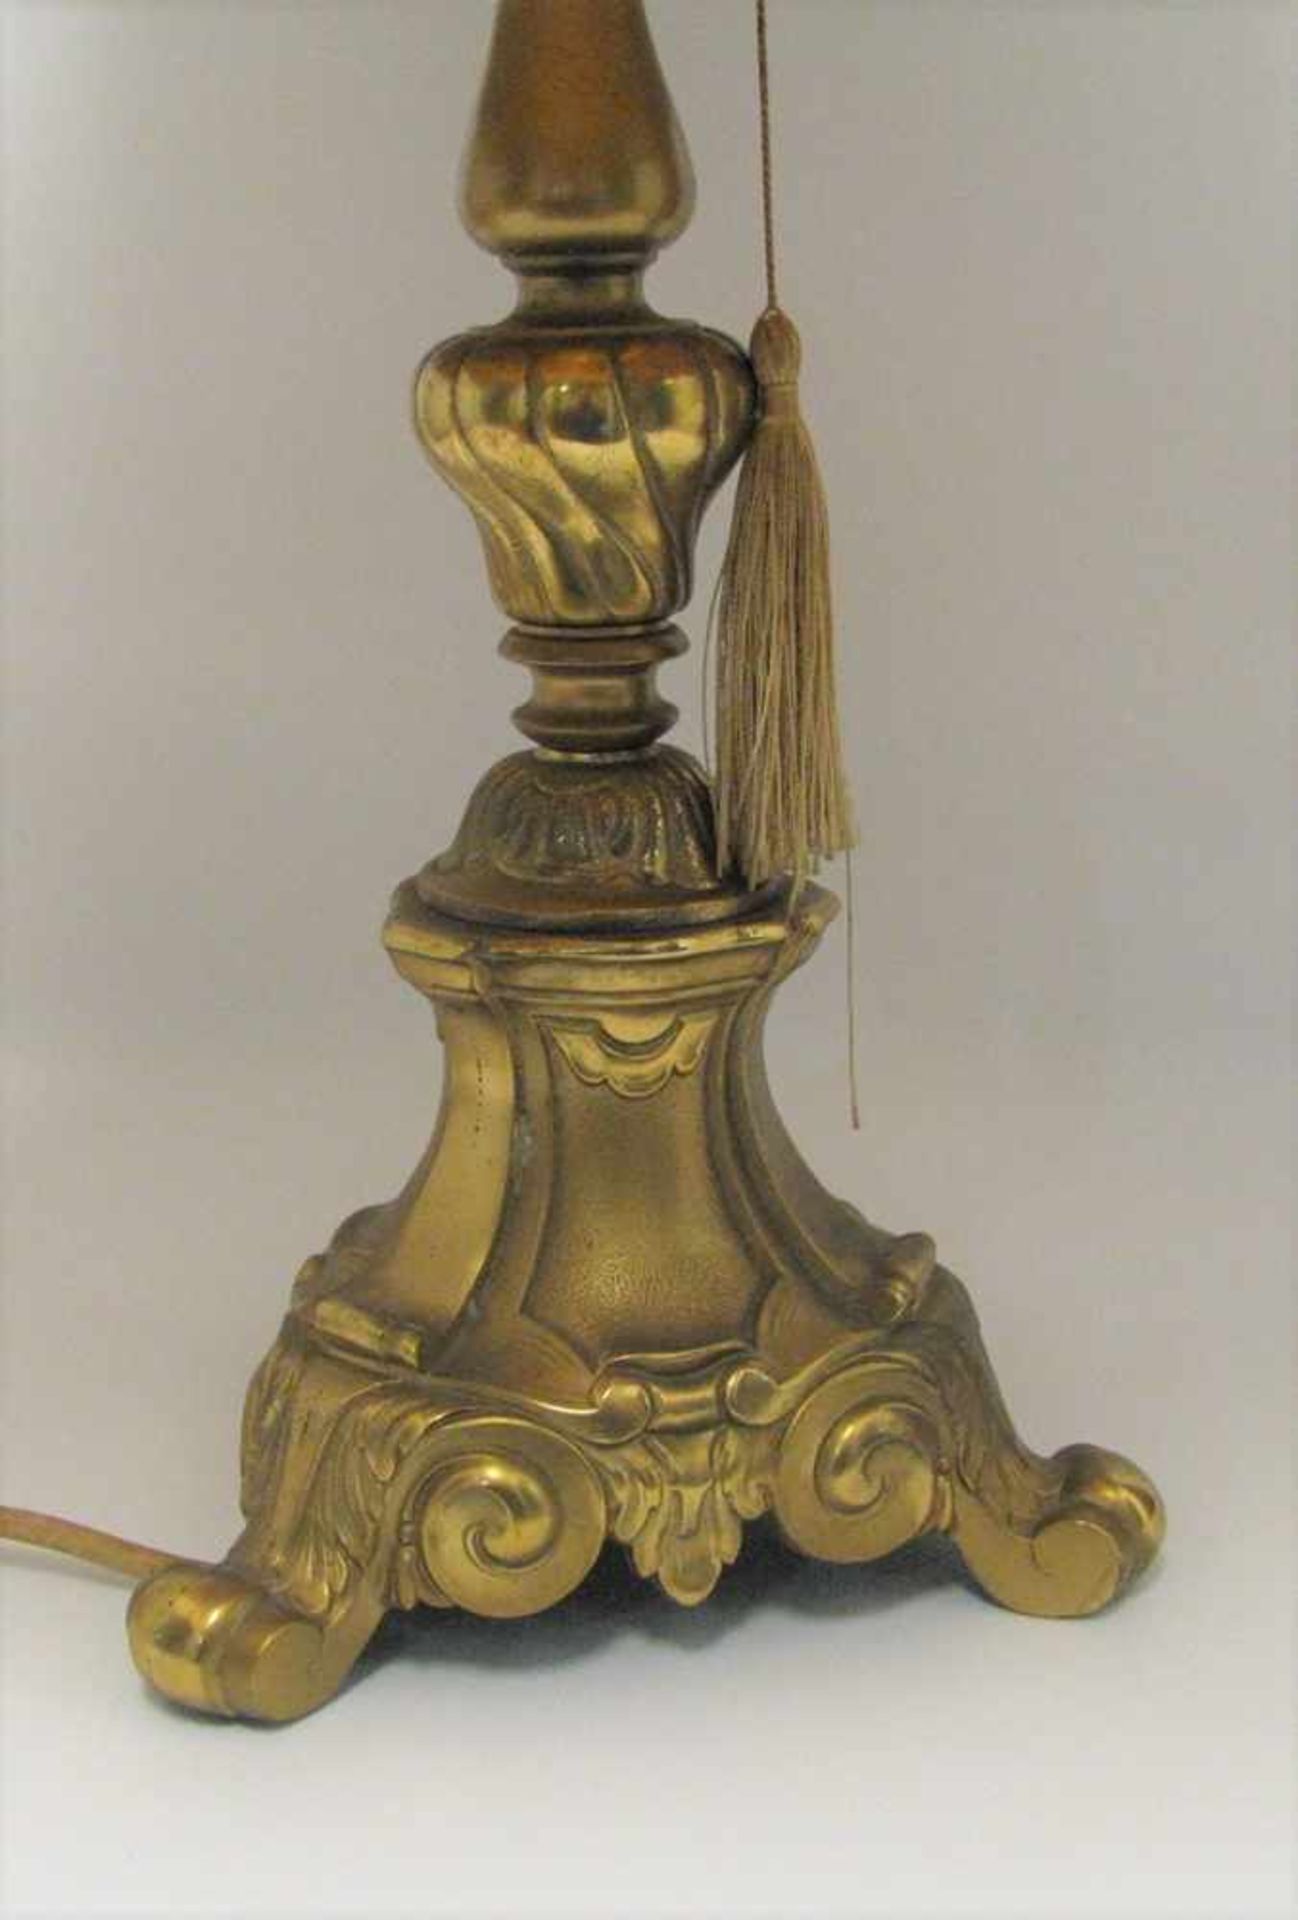 Tischlampe, Barockstil, Bronze, h 68 cm, d 19 cm.- - -19.00 % buyer's premium on the hammer - Bild 2 aus 2